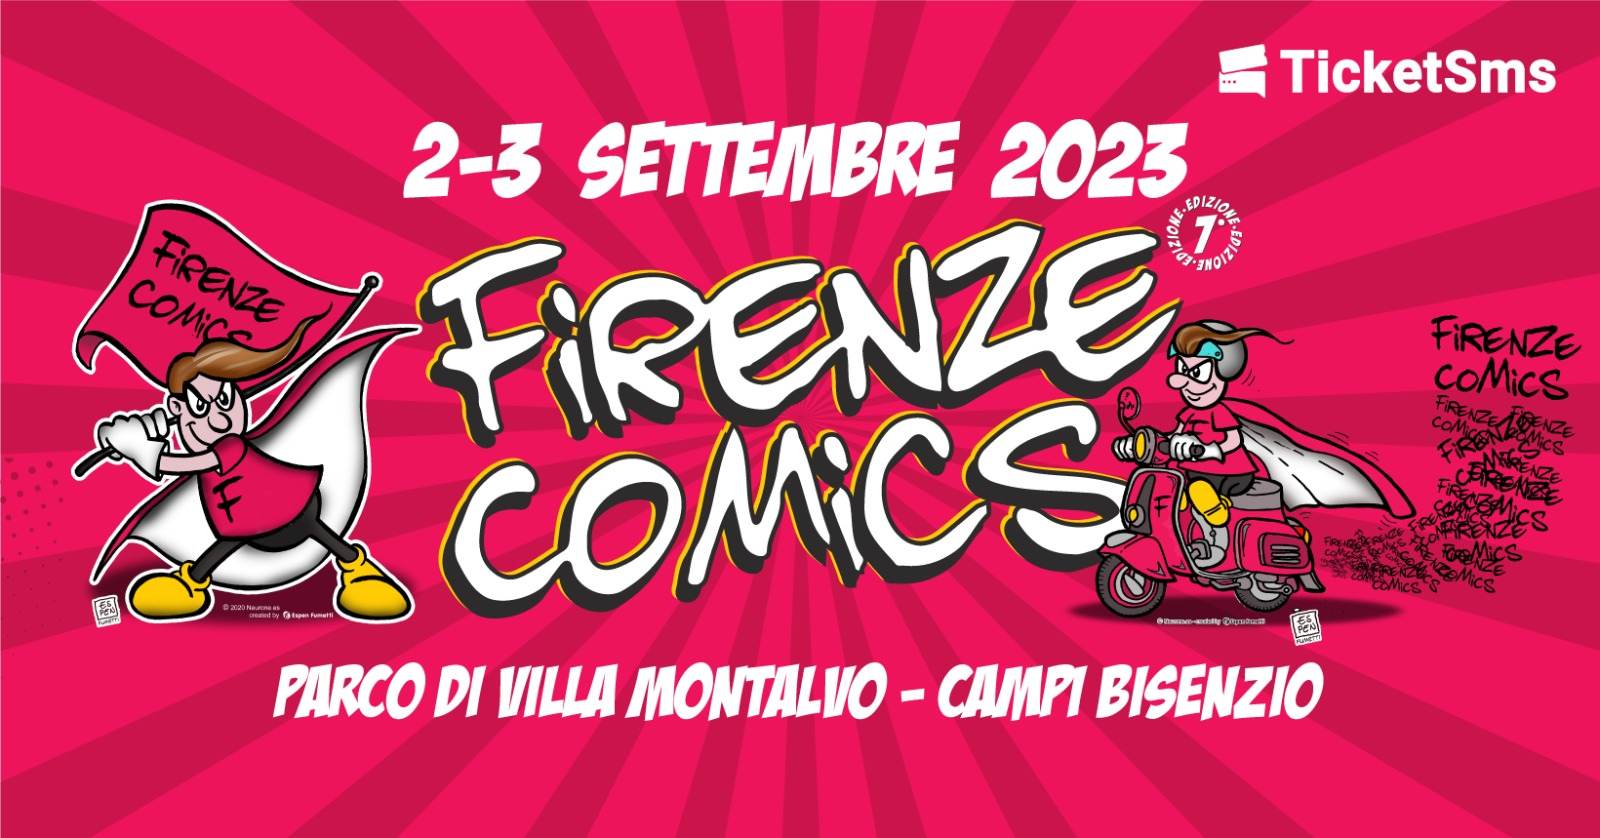 La settima edizione di Firenze Comics ritorna il 2 e 3 settembre 2023